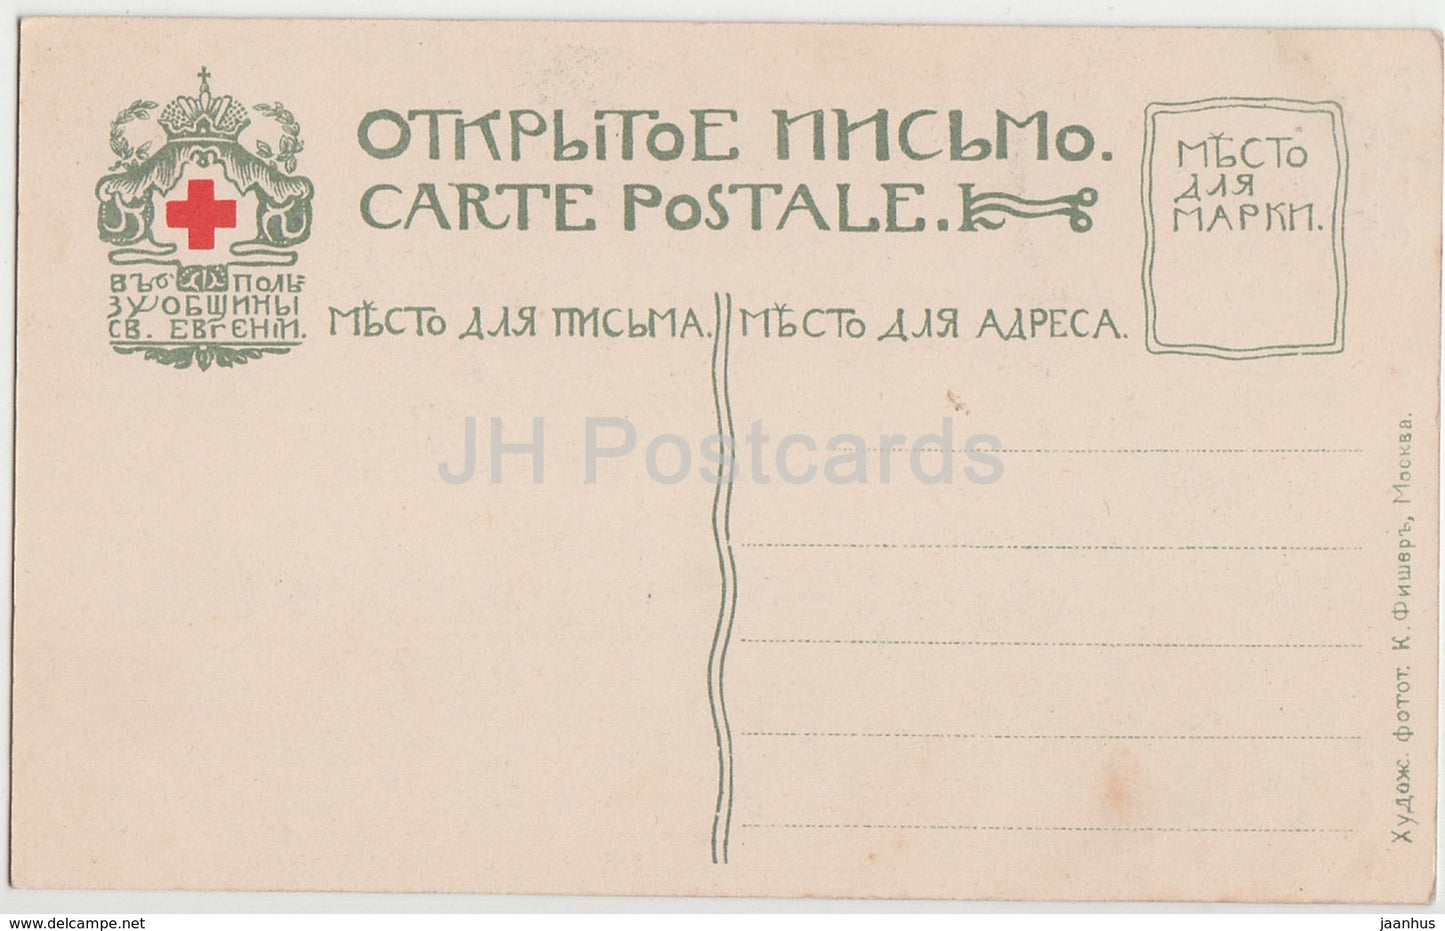 In den Bergen - Haus - Kleinrussland - Kleinrussland - Kleinrussland - Ukraine - alte Postkarte - Kaiserliches Russland